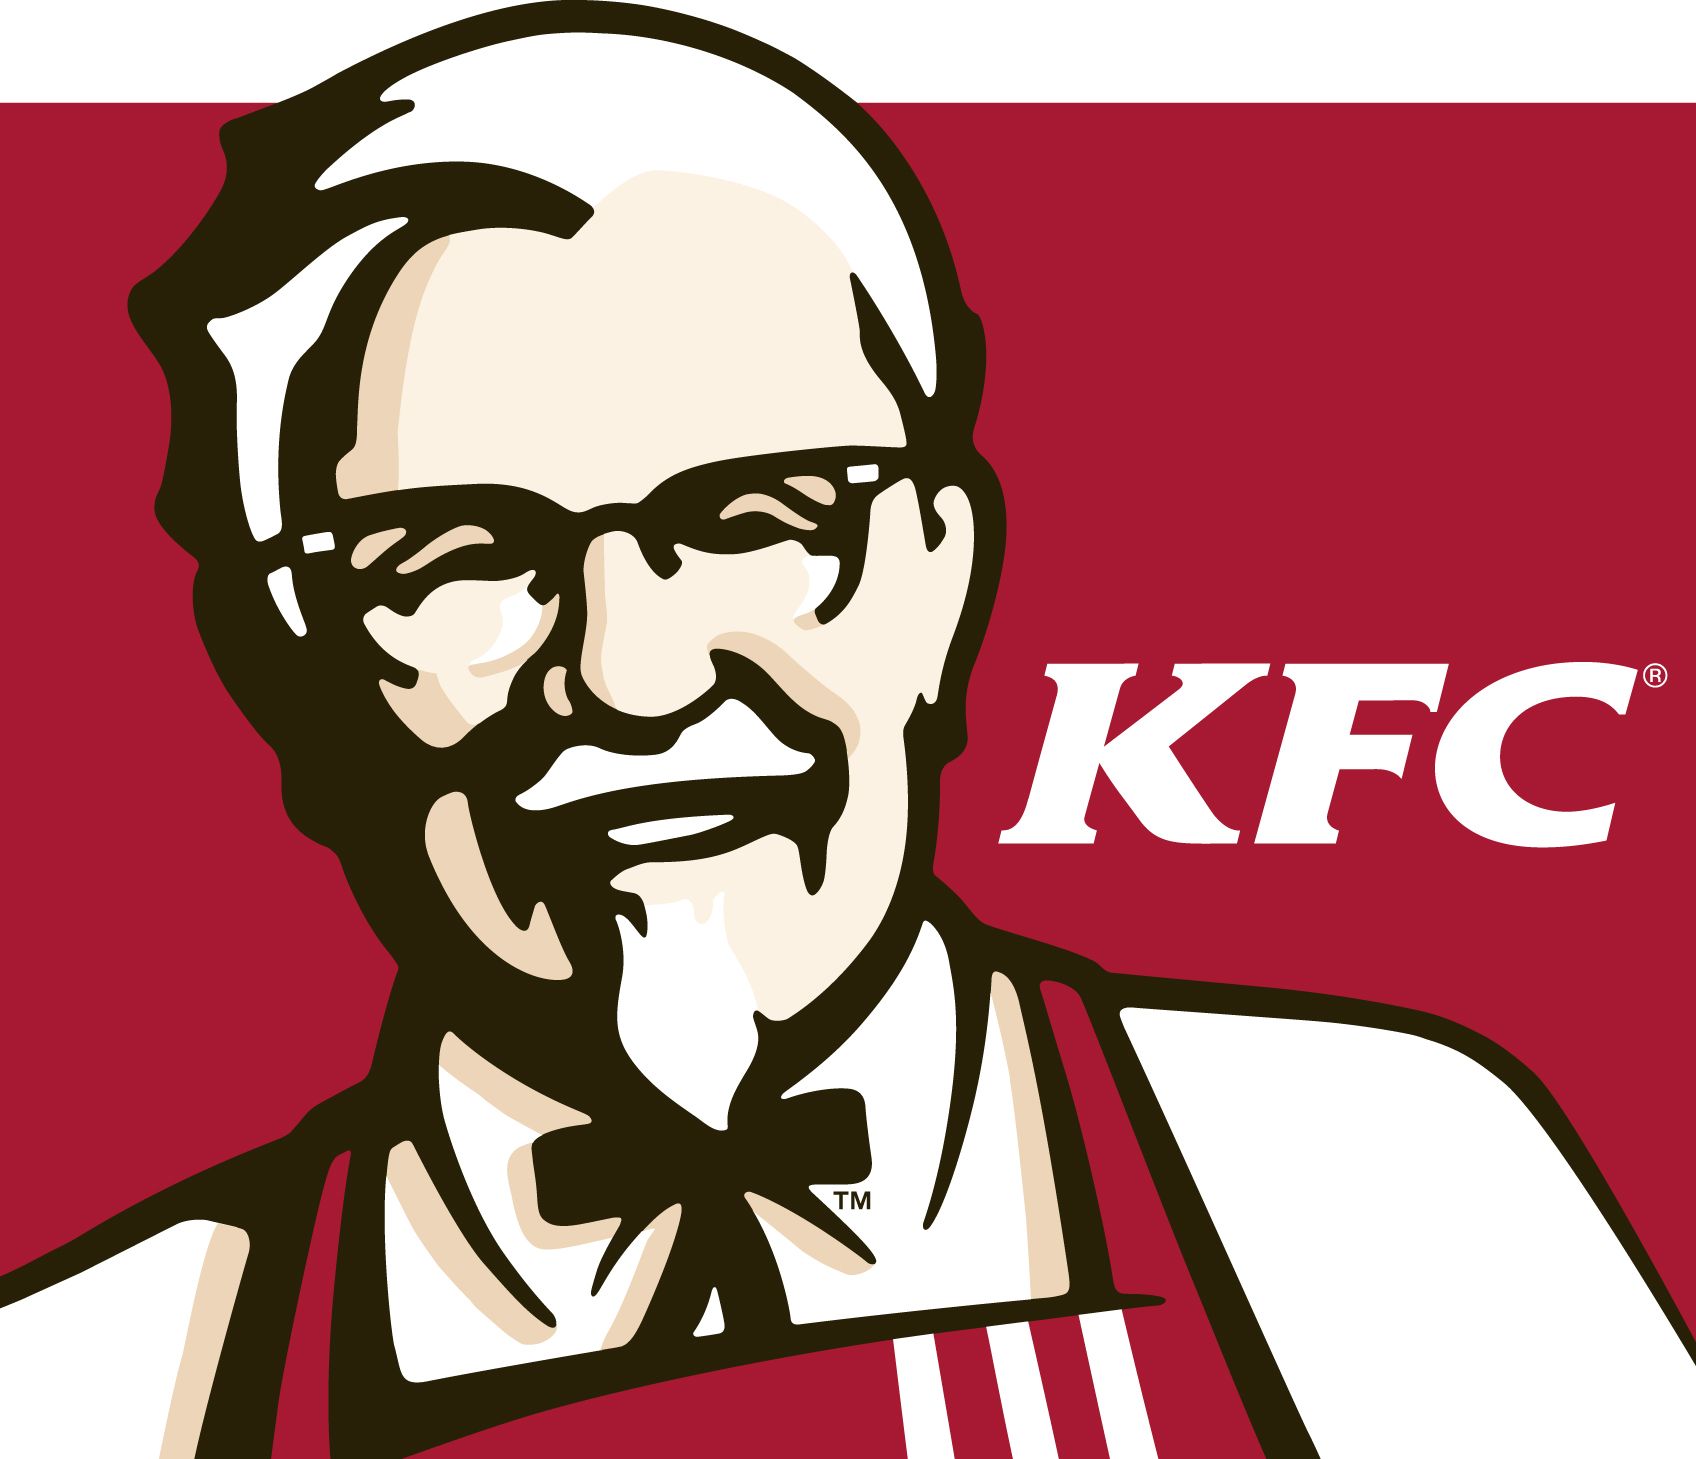 KFC - rozvoz